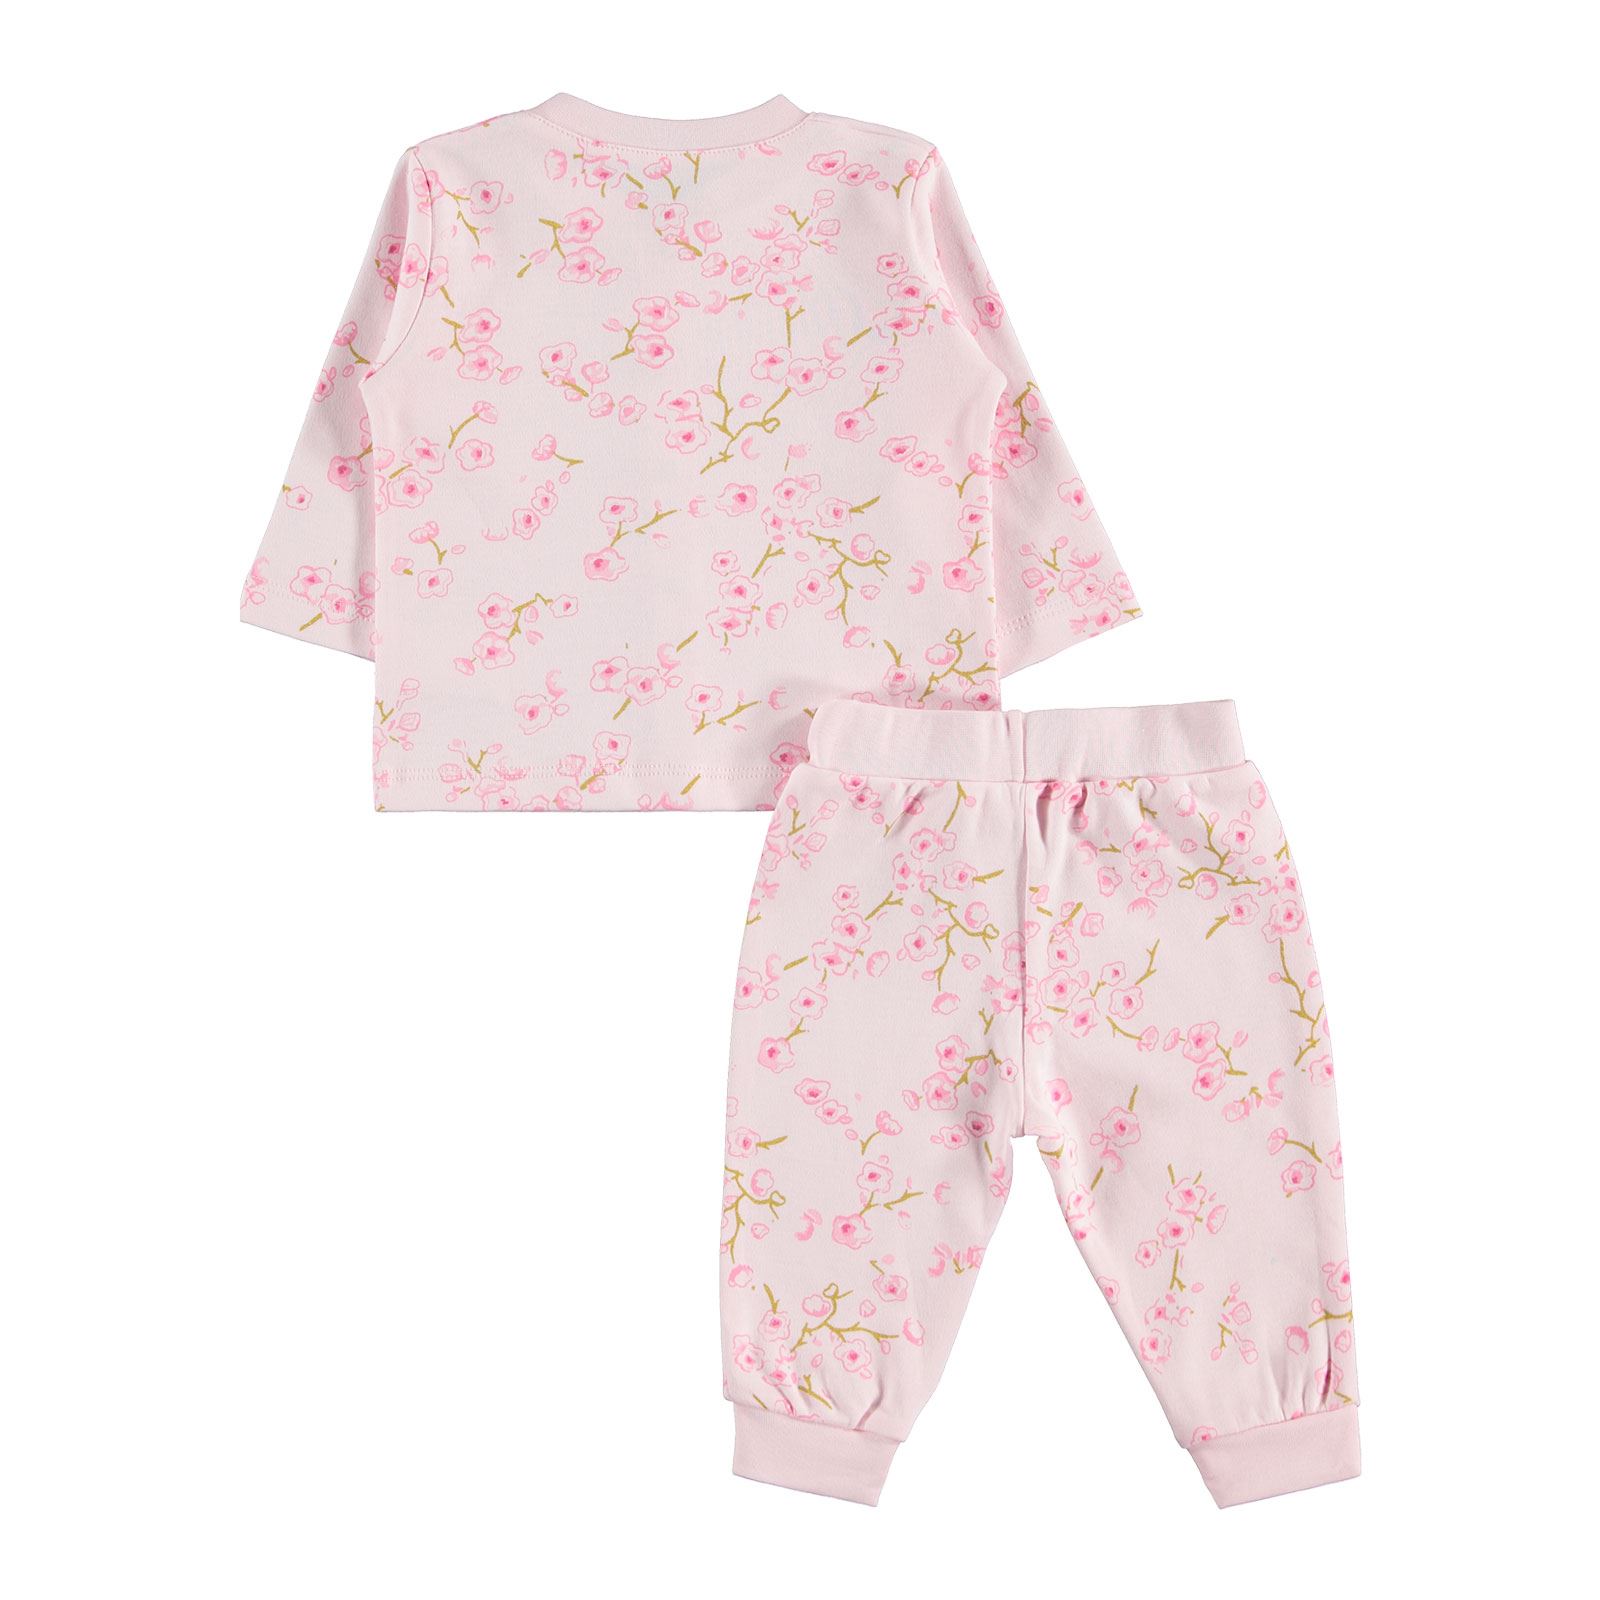 Kujju Kız Bebek Penye Pijama Takımı 3-18 Ay Pembe